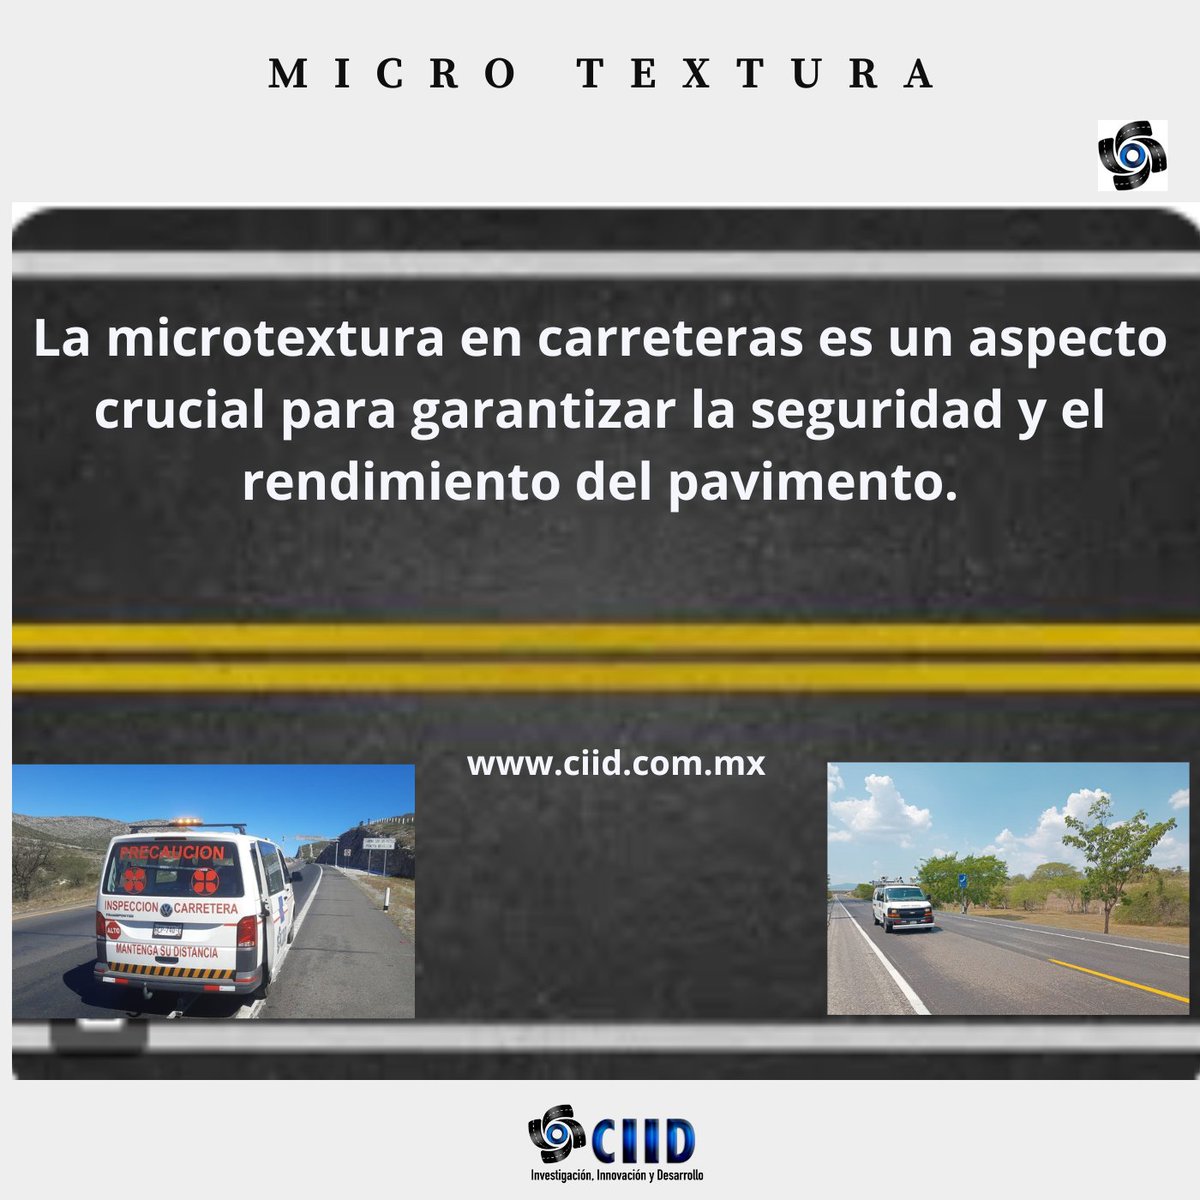 Microtextura La microtextura en carreteras es un aspecto crucial para garantizar la seguridad y el rendimiento del pavimento.